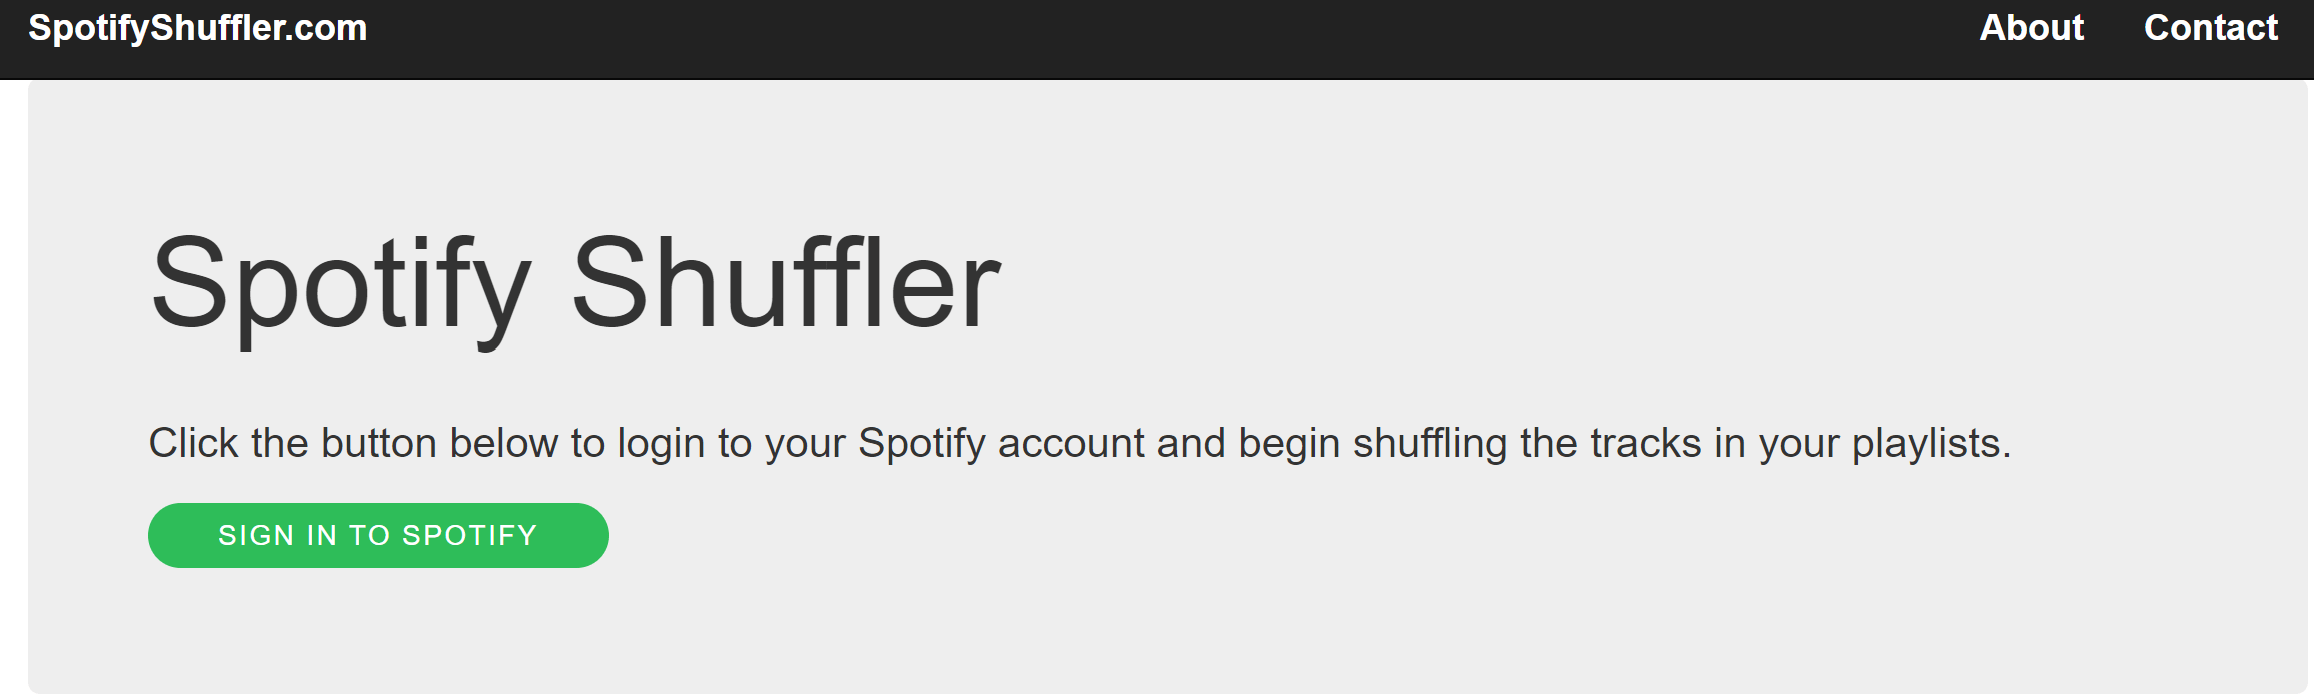 spotify shuffler